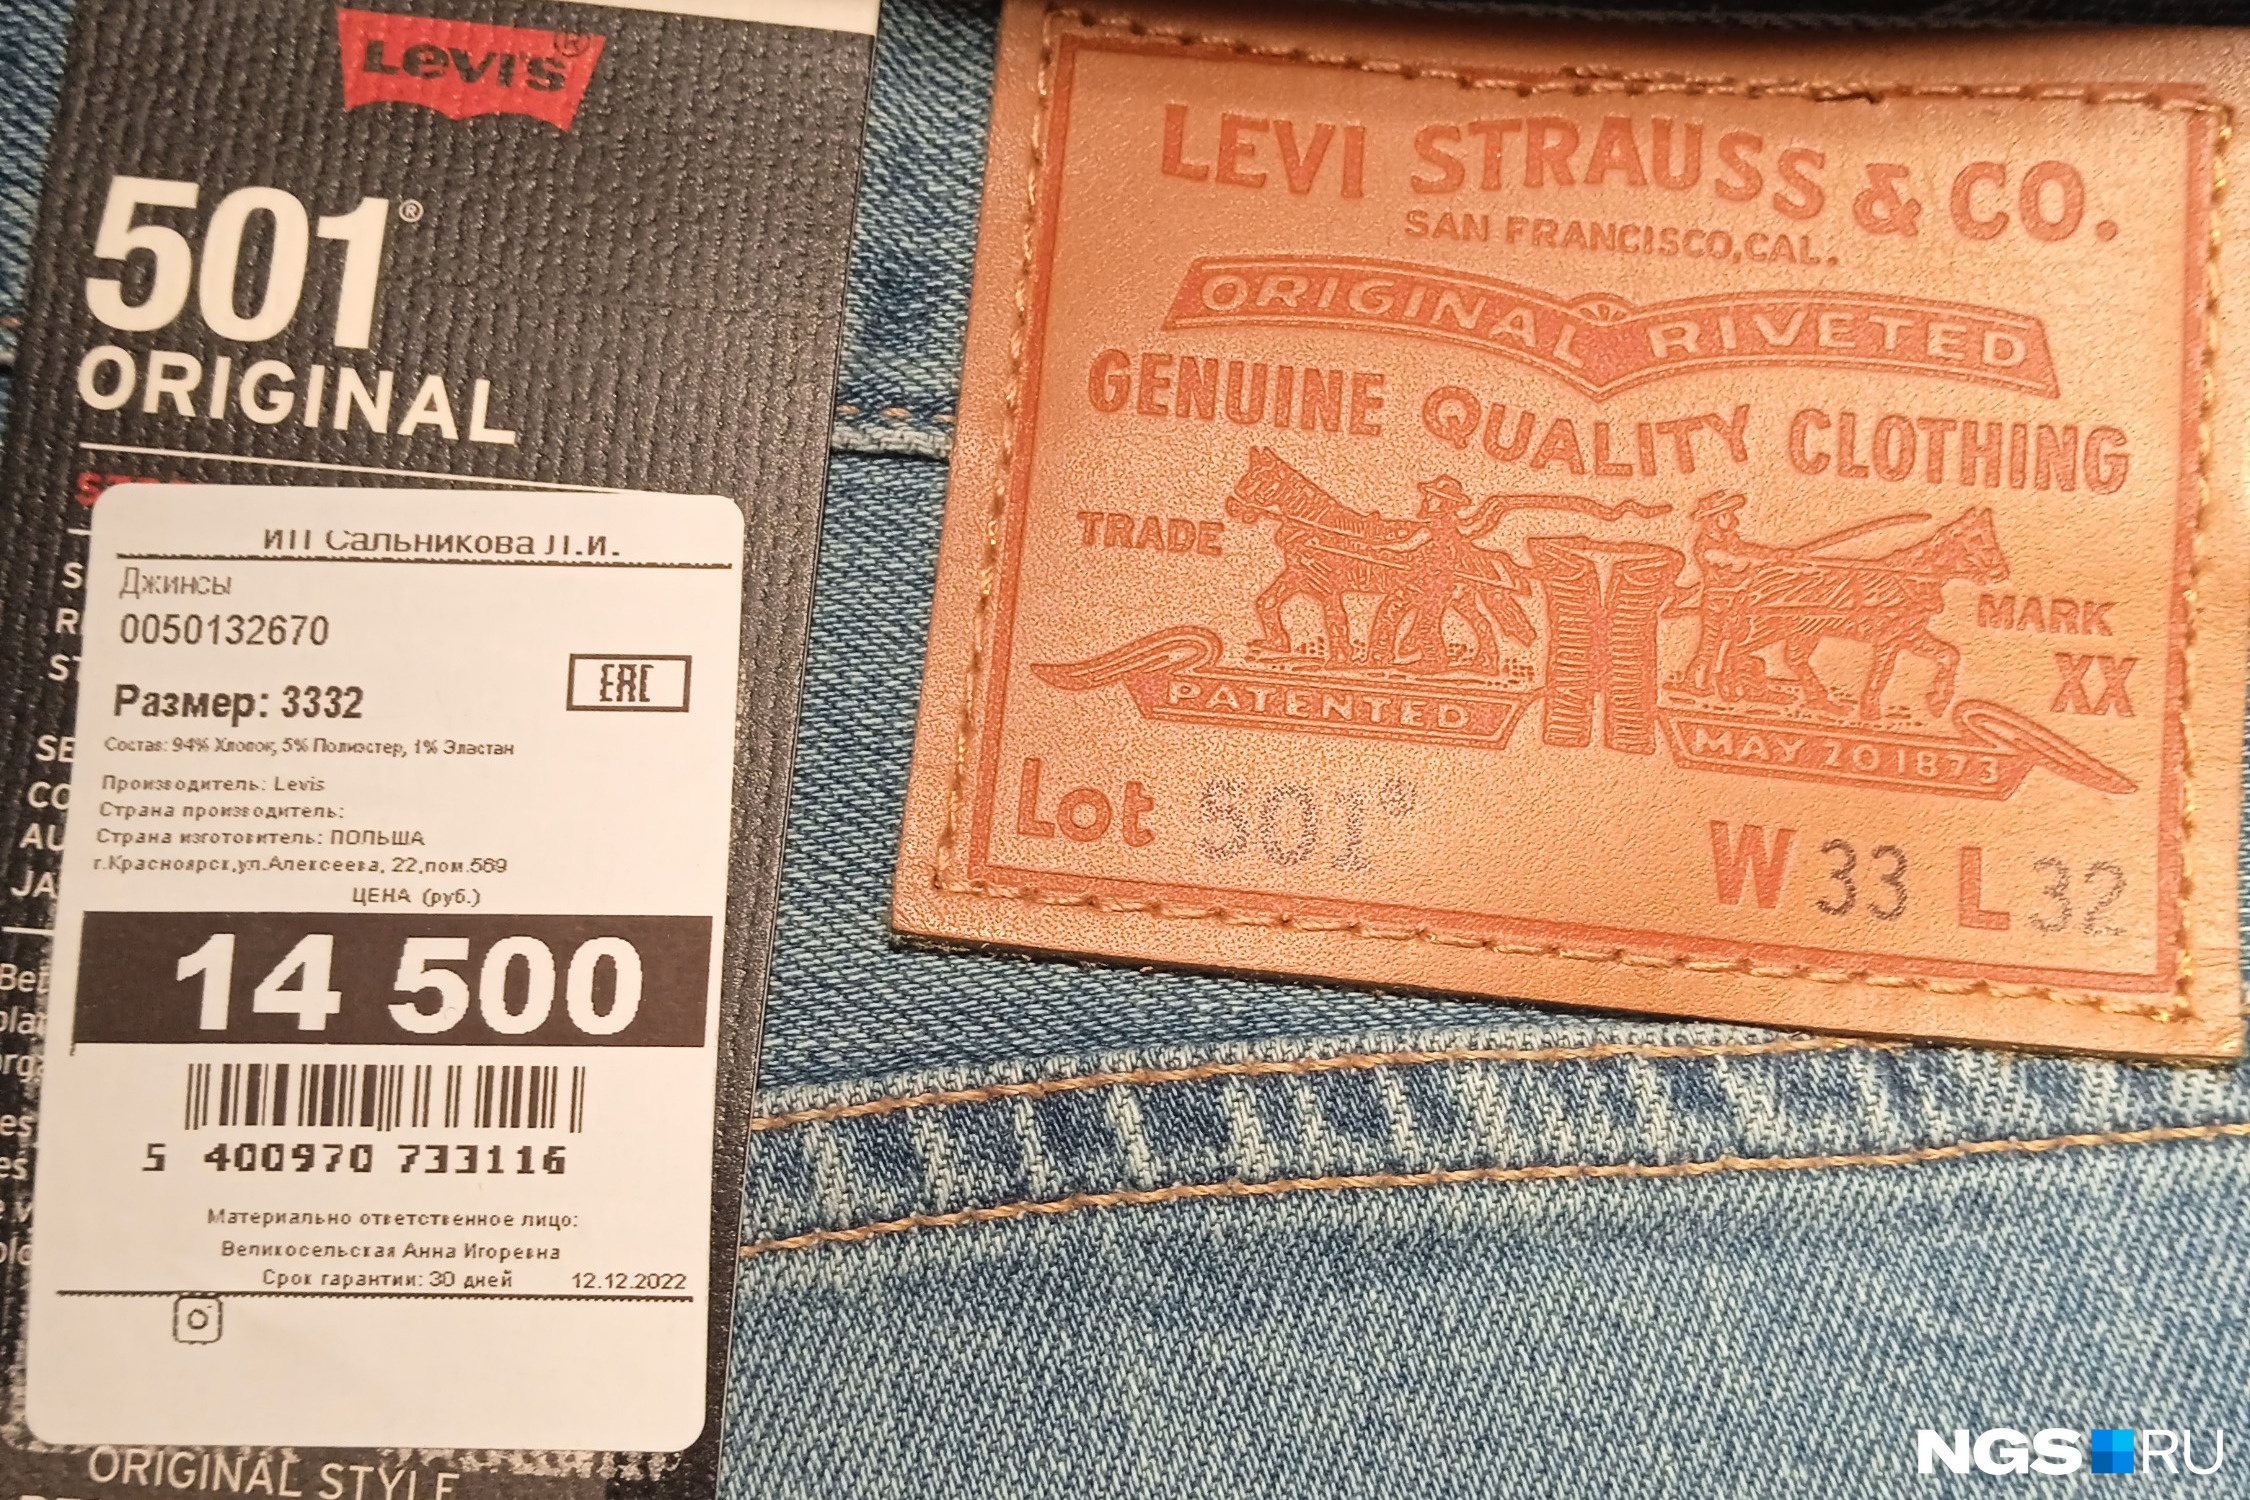 Американские джинсы польского производства обойдутся недешево